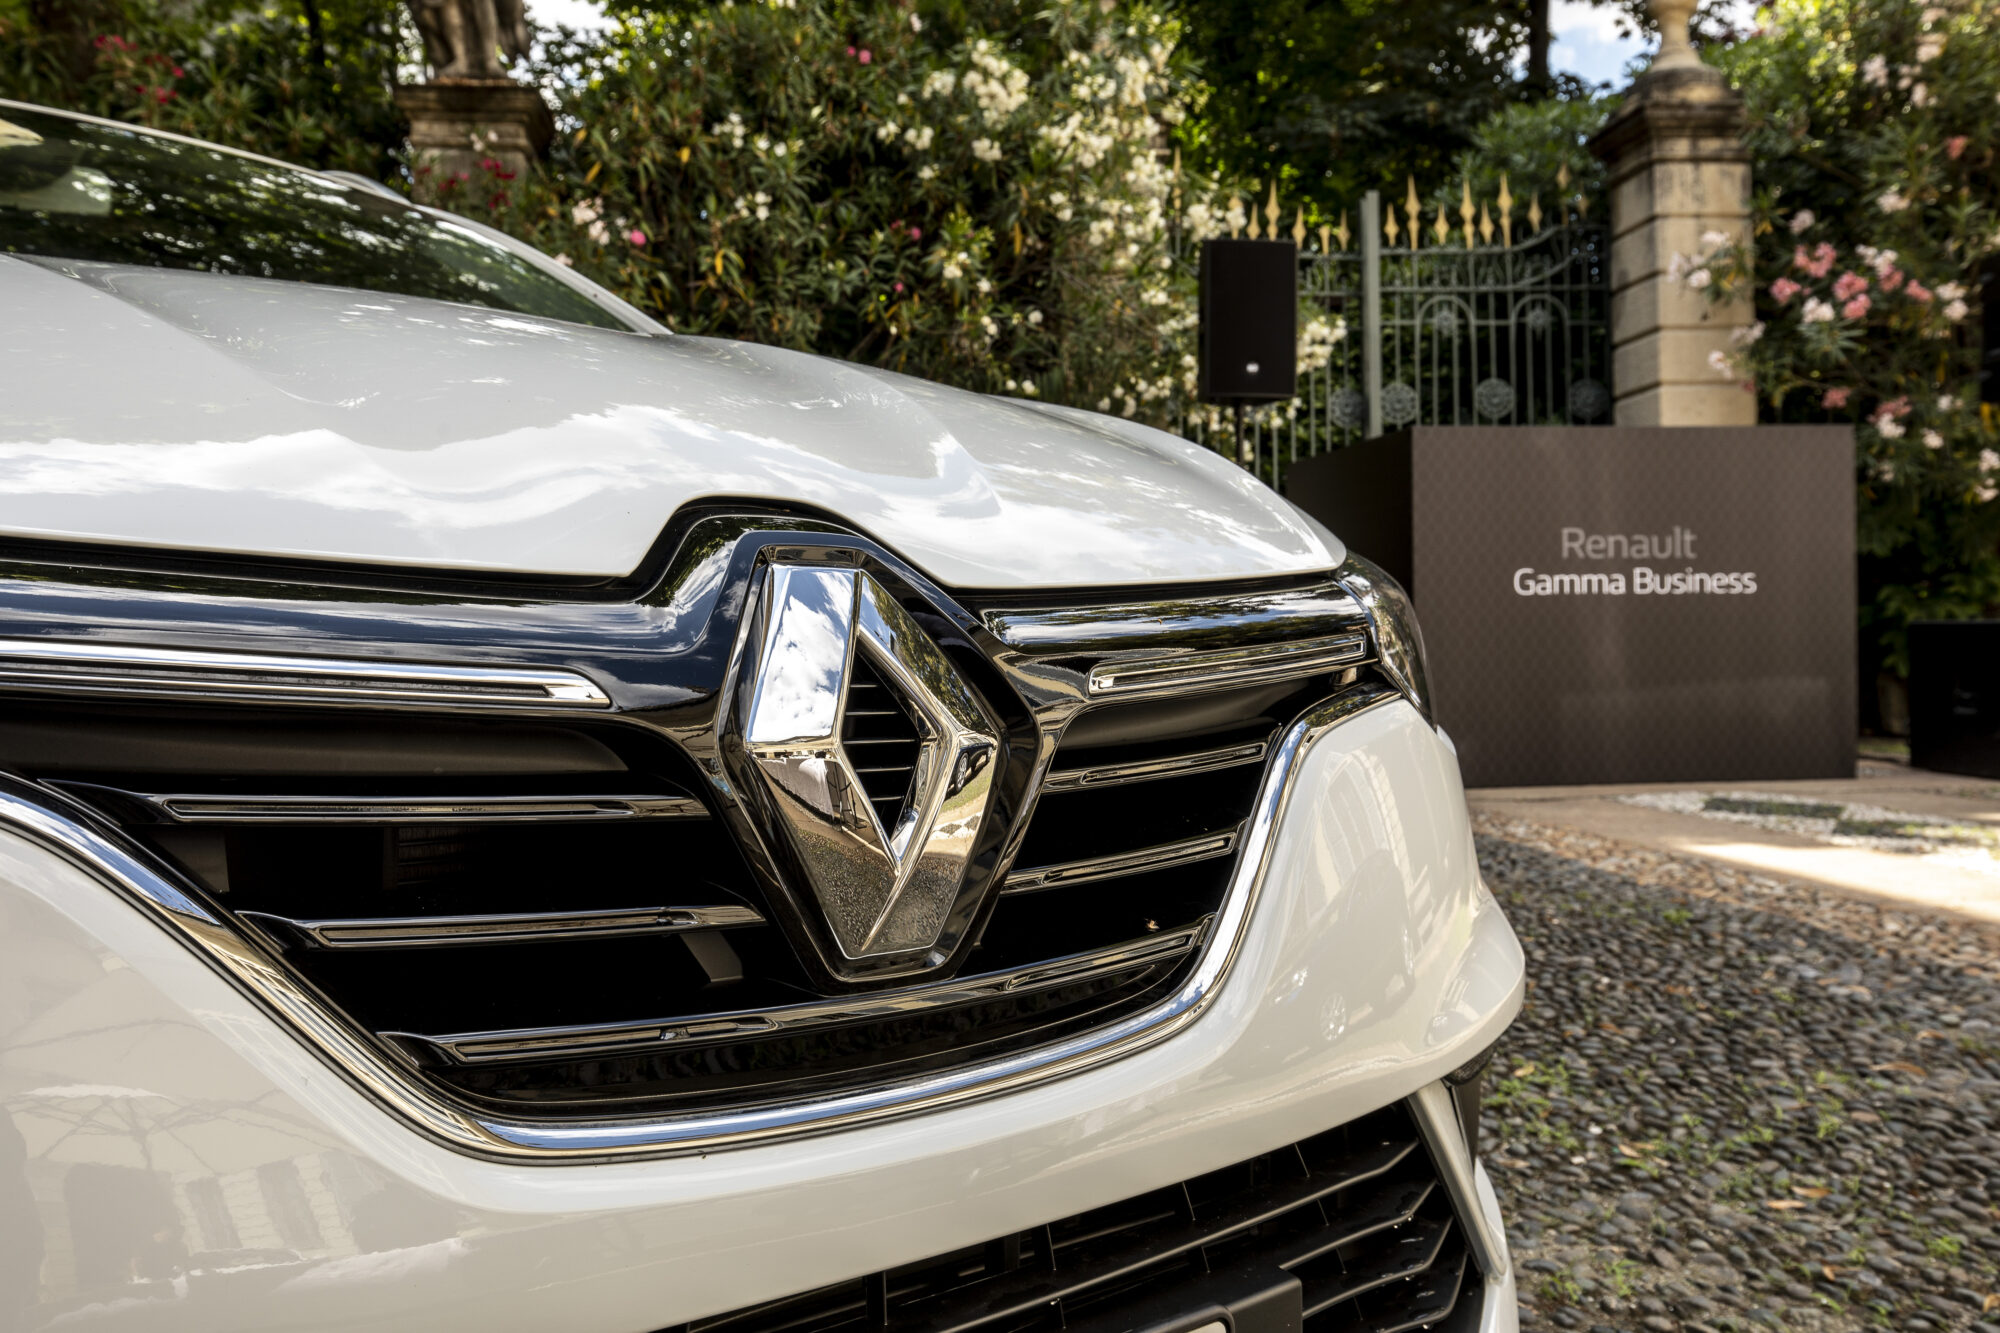 CS- Renault continua a rinnovare con la GAMMA TRASVERSALE BUSINESS per la clientela professionale